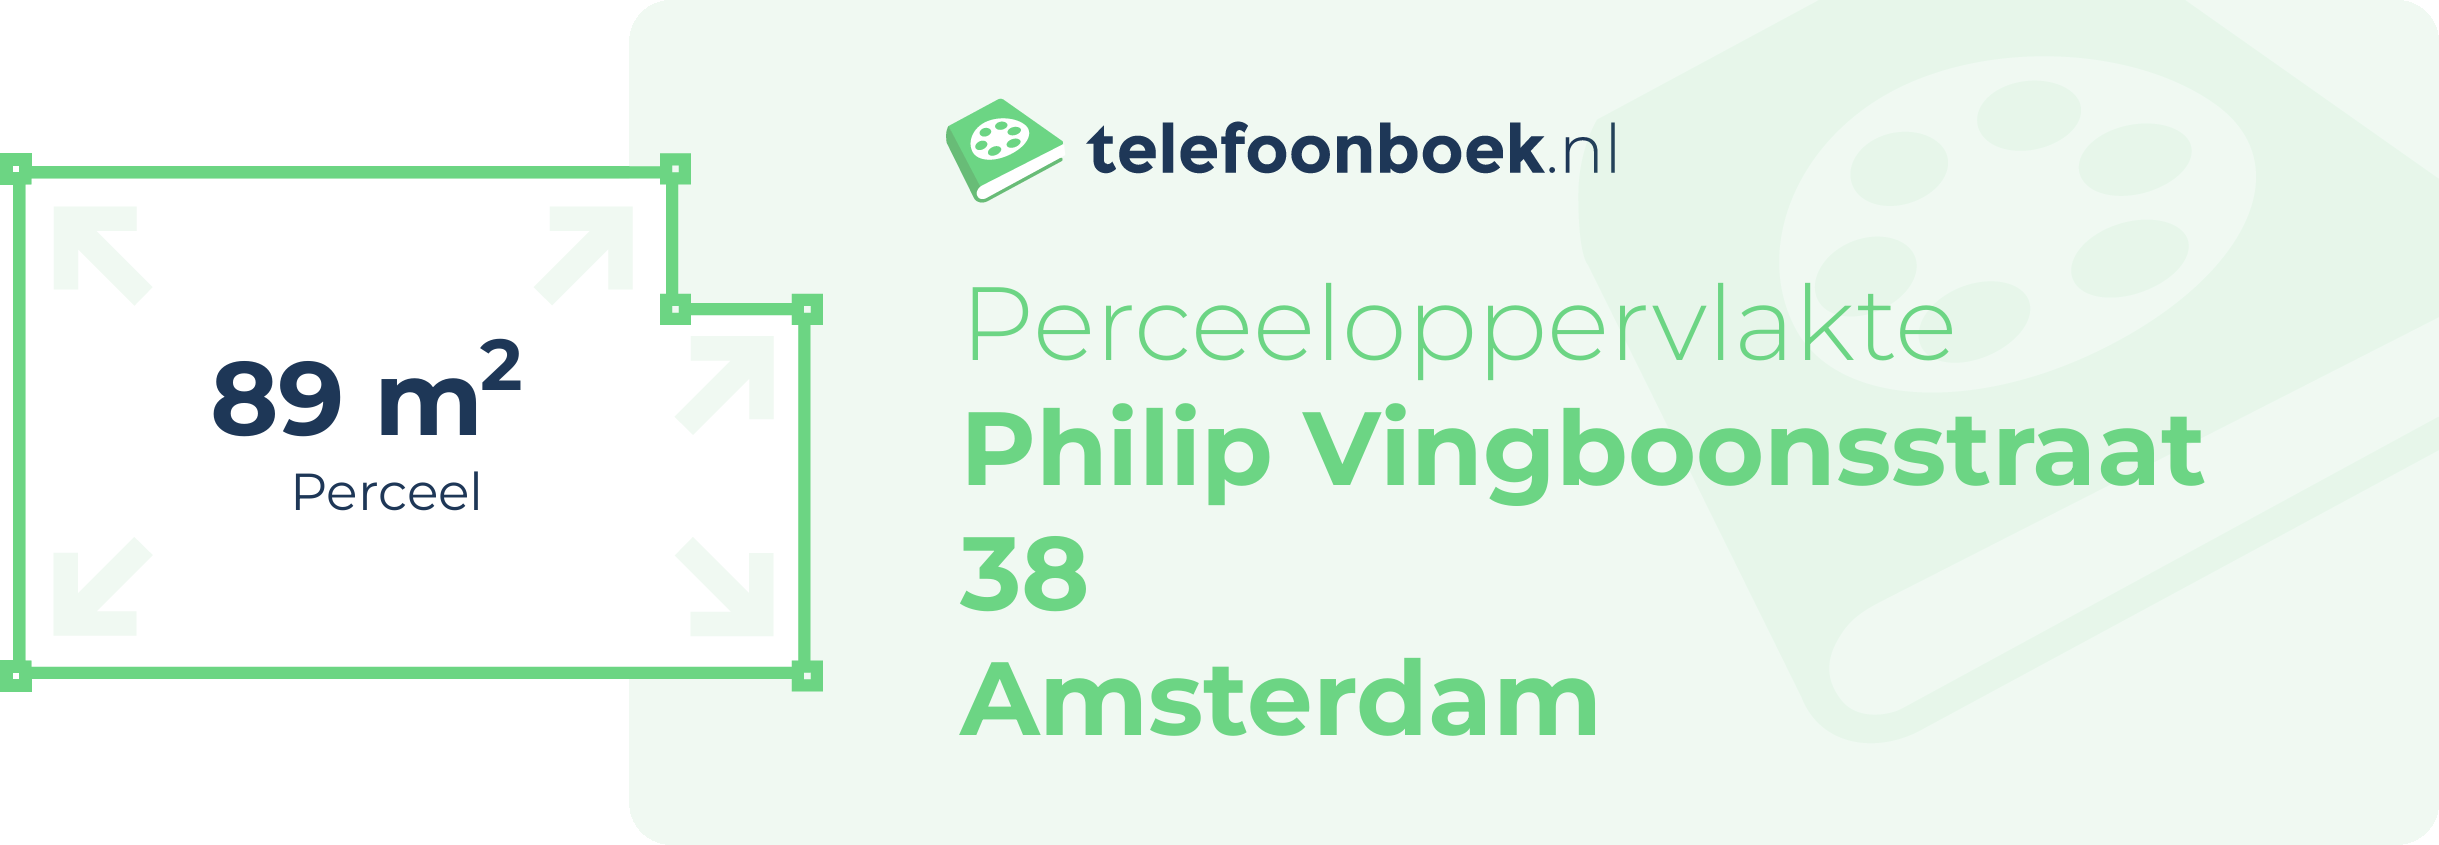 Perceeloppervlakte Philip Vingboonsstraat 38 Amsterdam